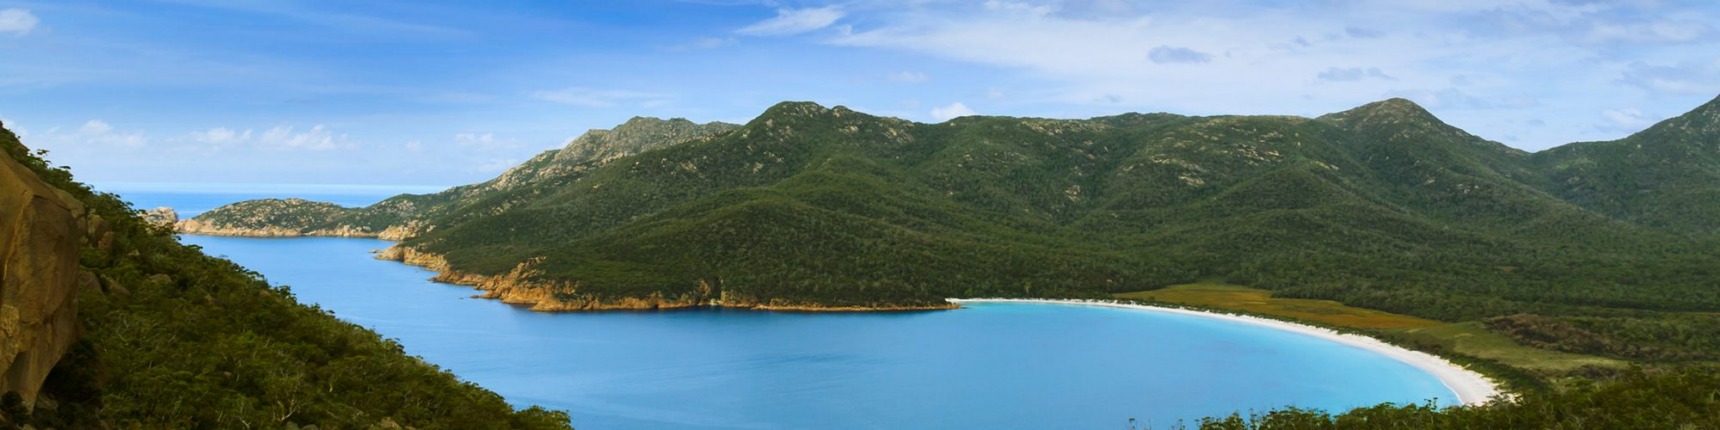 Tasmania, coastline, aerial shot